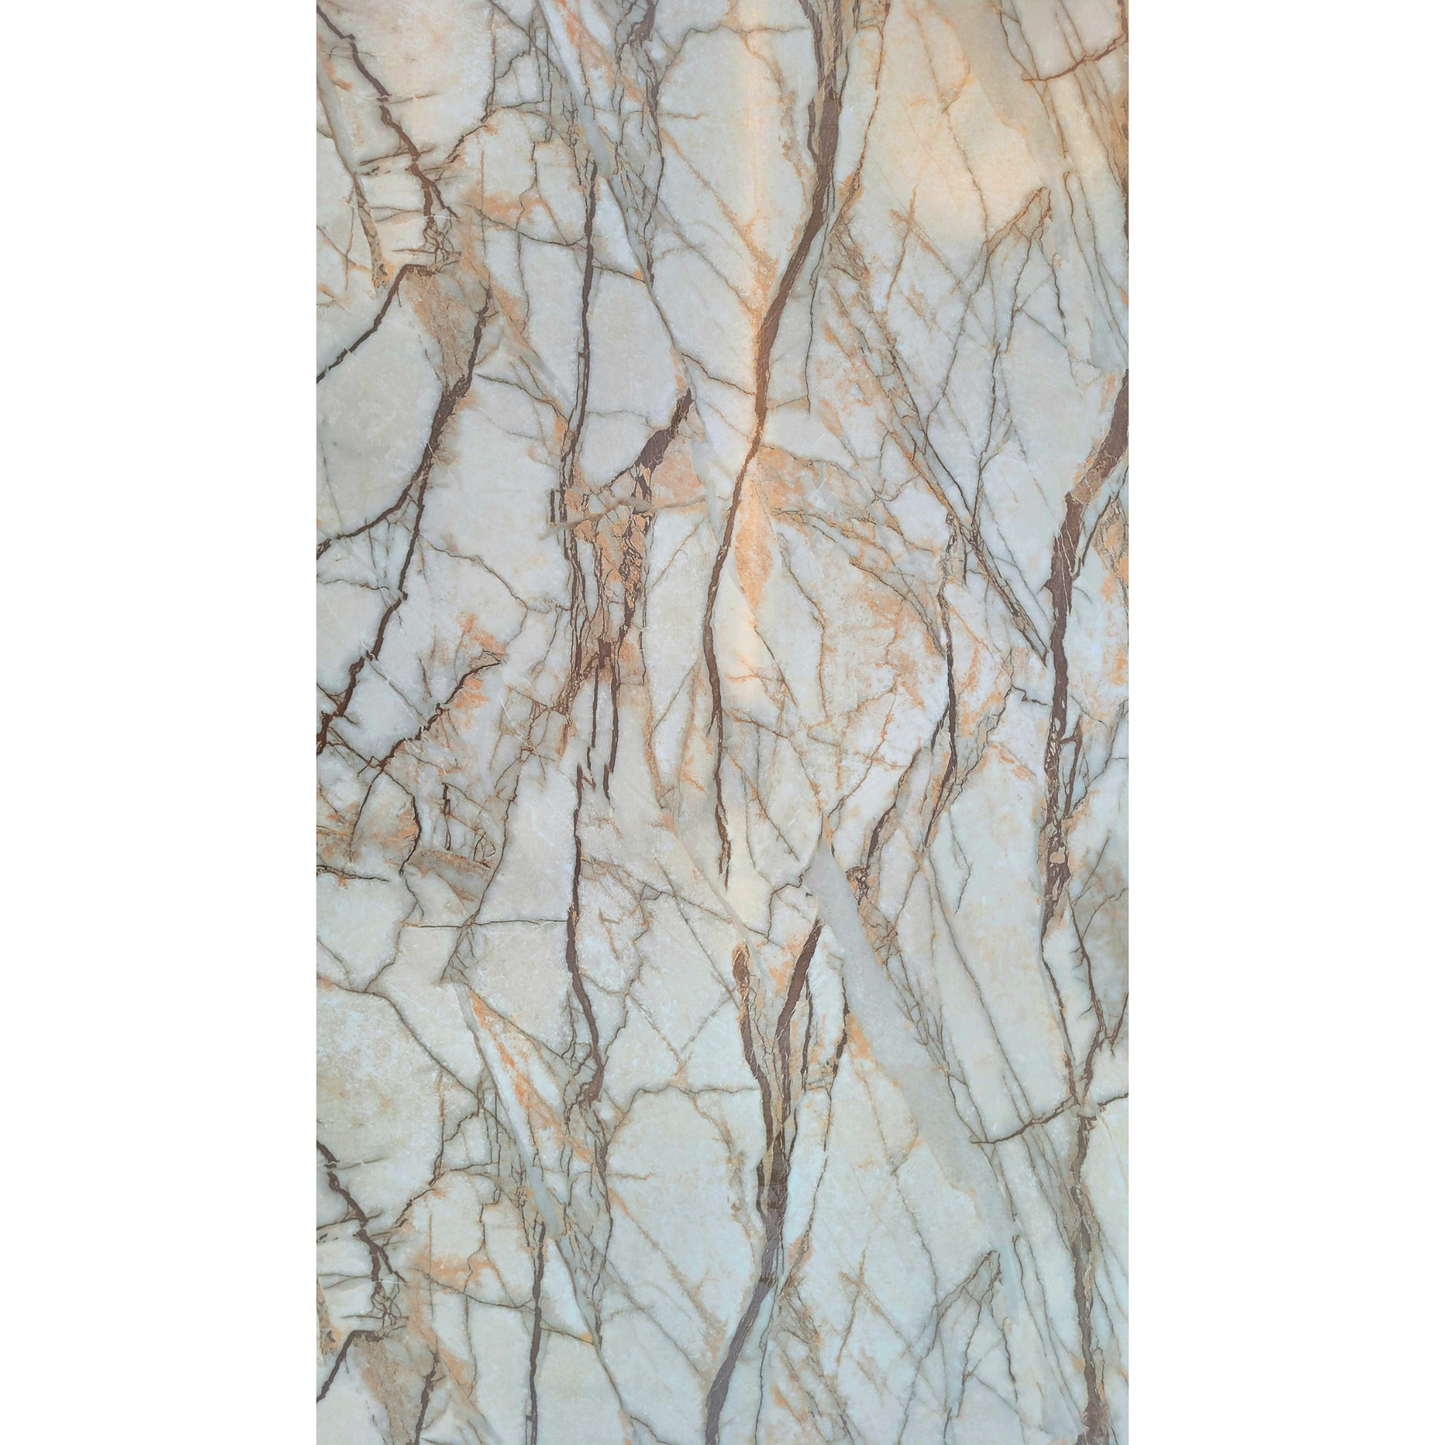 Blue Texture marble sheet | 8 Feet * 4 Feet